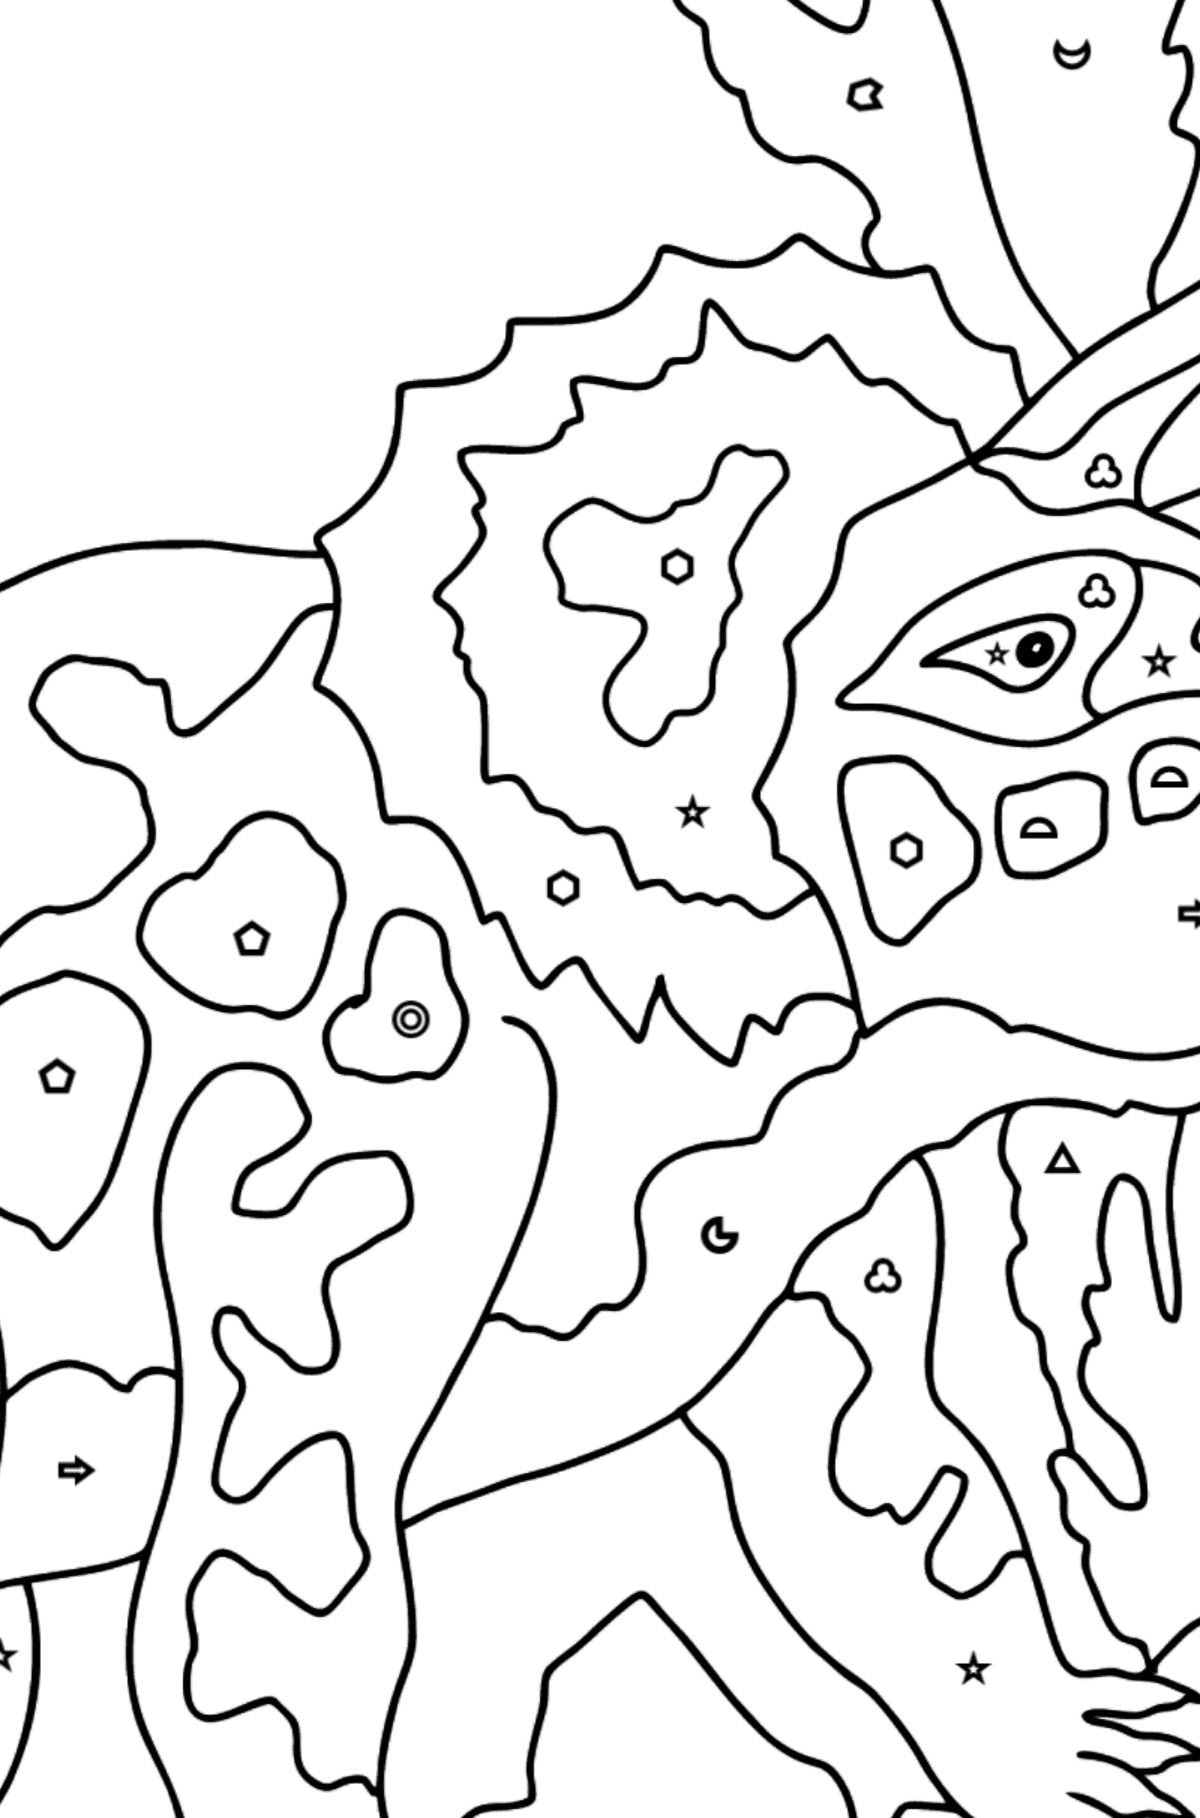 Dibujo para colorear Triceratops (difícil) - Colorear por Formas Geométricas para Niños